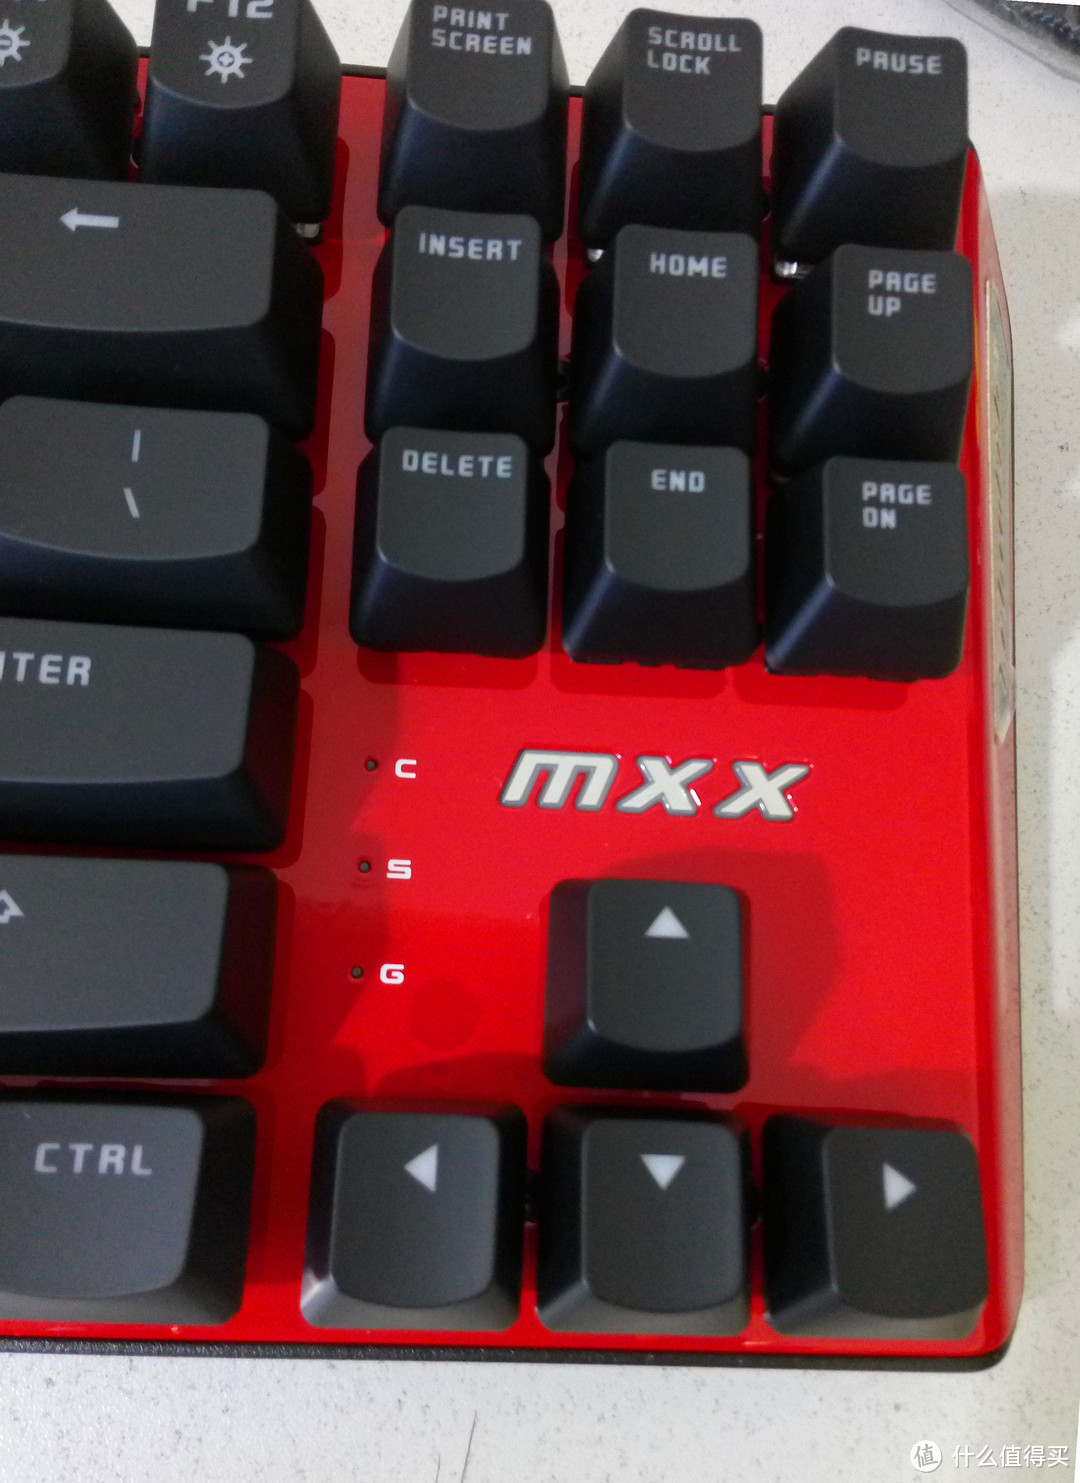 离完美还差一大步：镭拓MXX红款金标限量版机械键盘